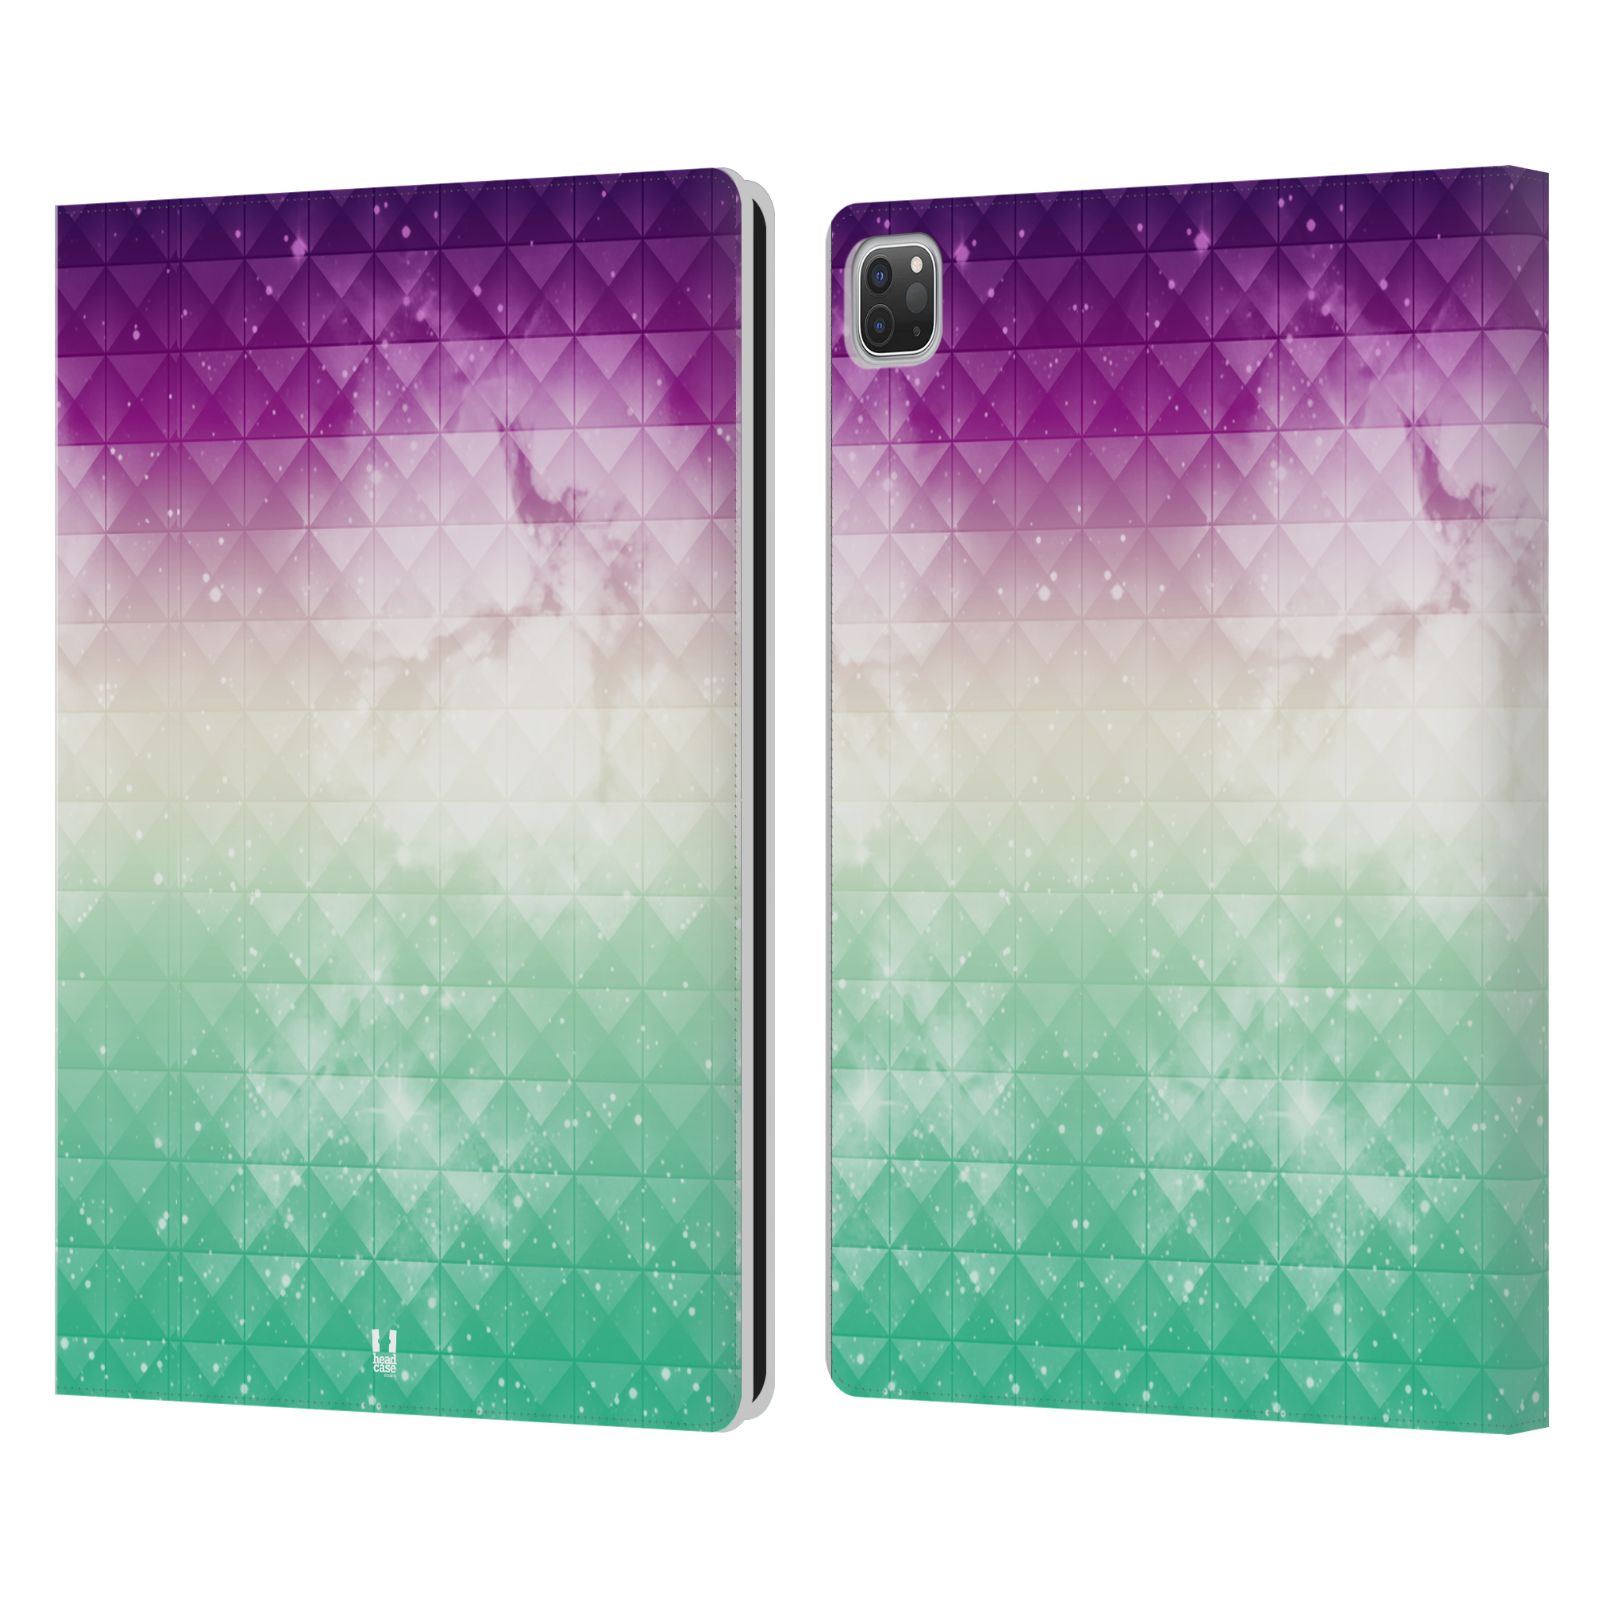 Pouzdro pro tablet Apple Ipad Pro 12.9 - HEAD CASE - barevná vesmírná mlhovina fialová a zelená